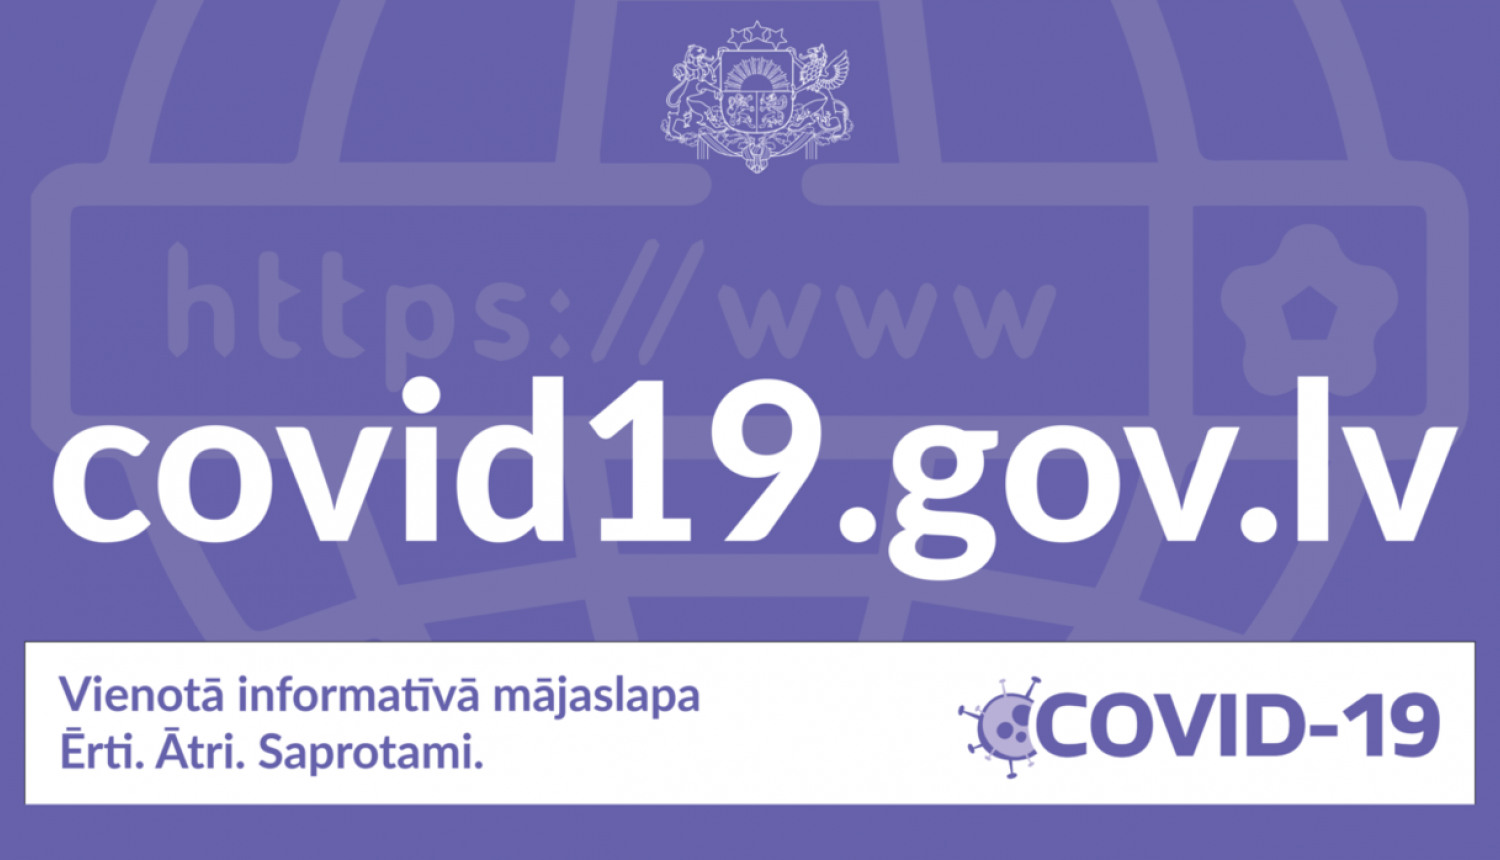 Turpmāk tīmekļvietnē covid19.gov.lv publicēs informāciju par Covid-19 pandēmijas laikā noslēgtajiem līgumiem